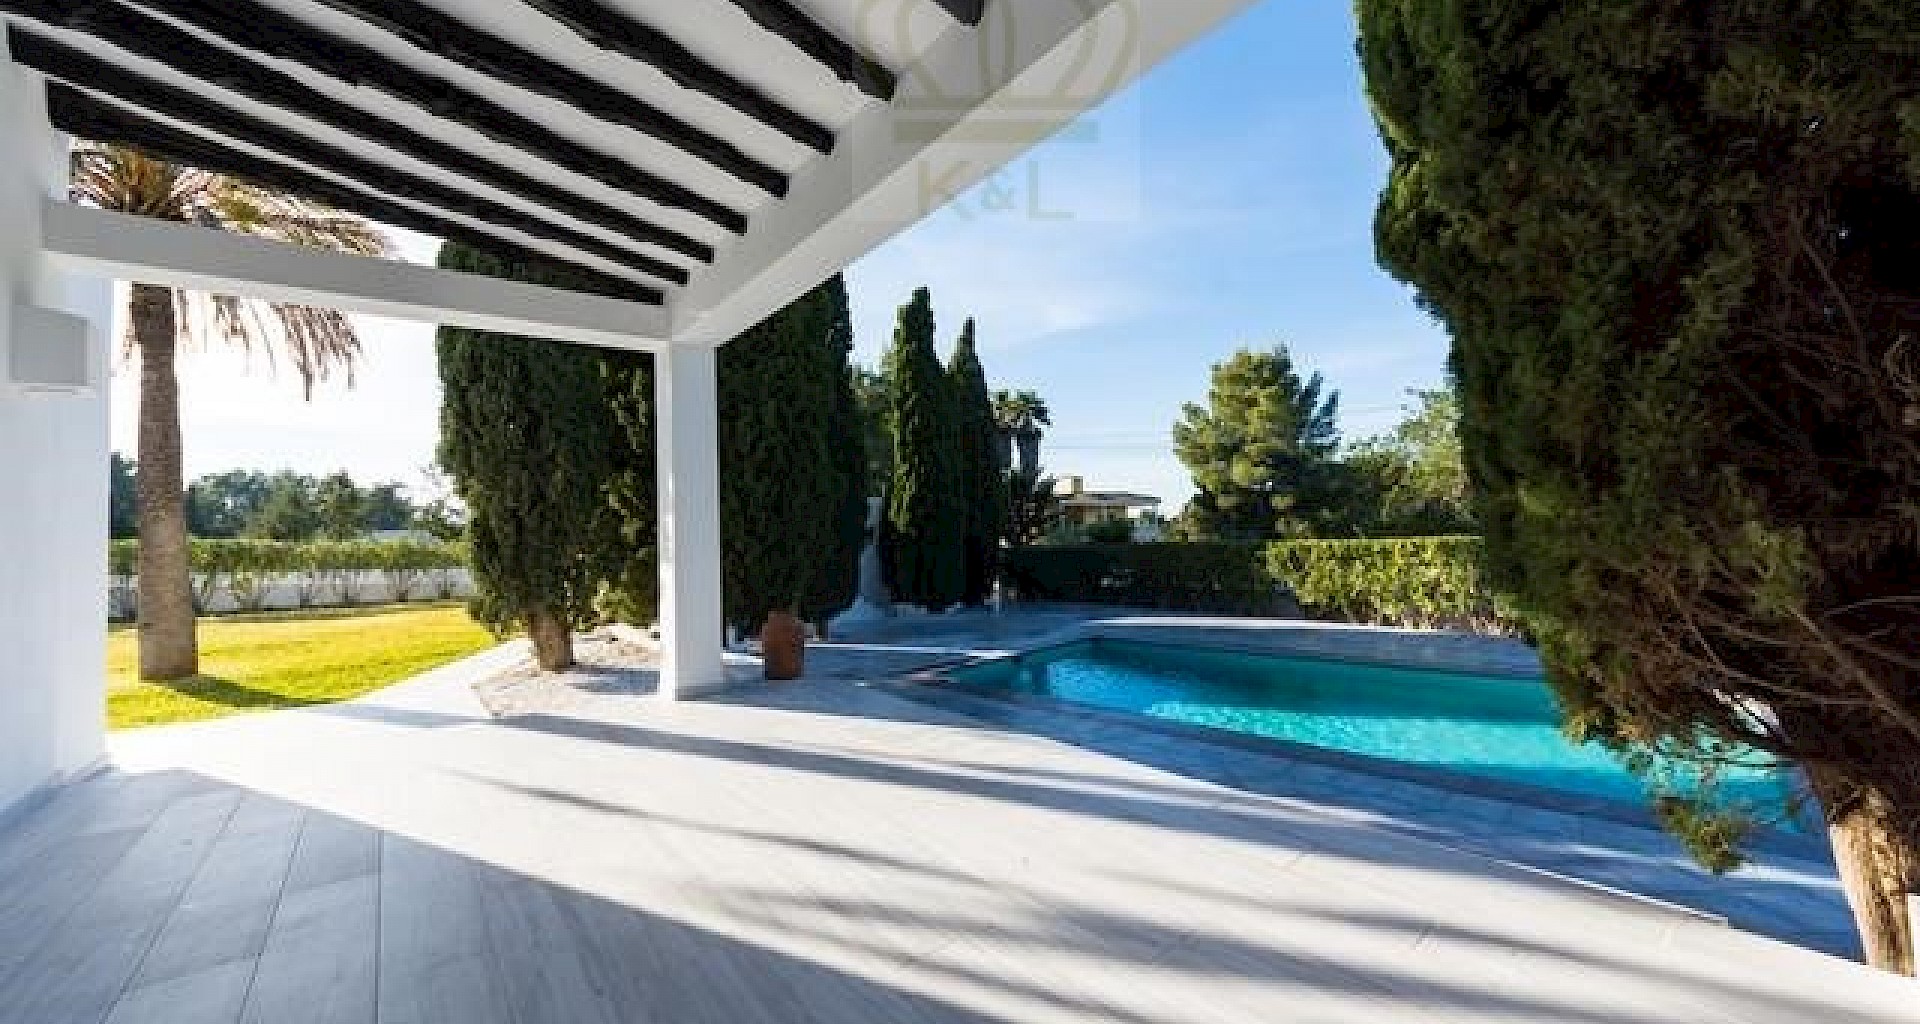 KROHN & LUEDEMANN Komplett renoviertes Haus auf Ibiza mit Pool und viel Privatsphäre Benimussa (13)